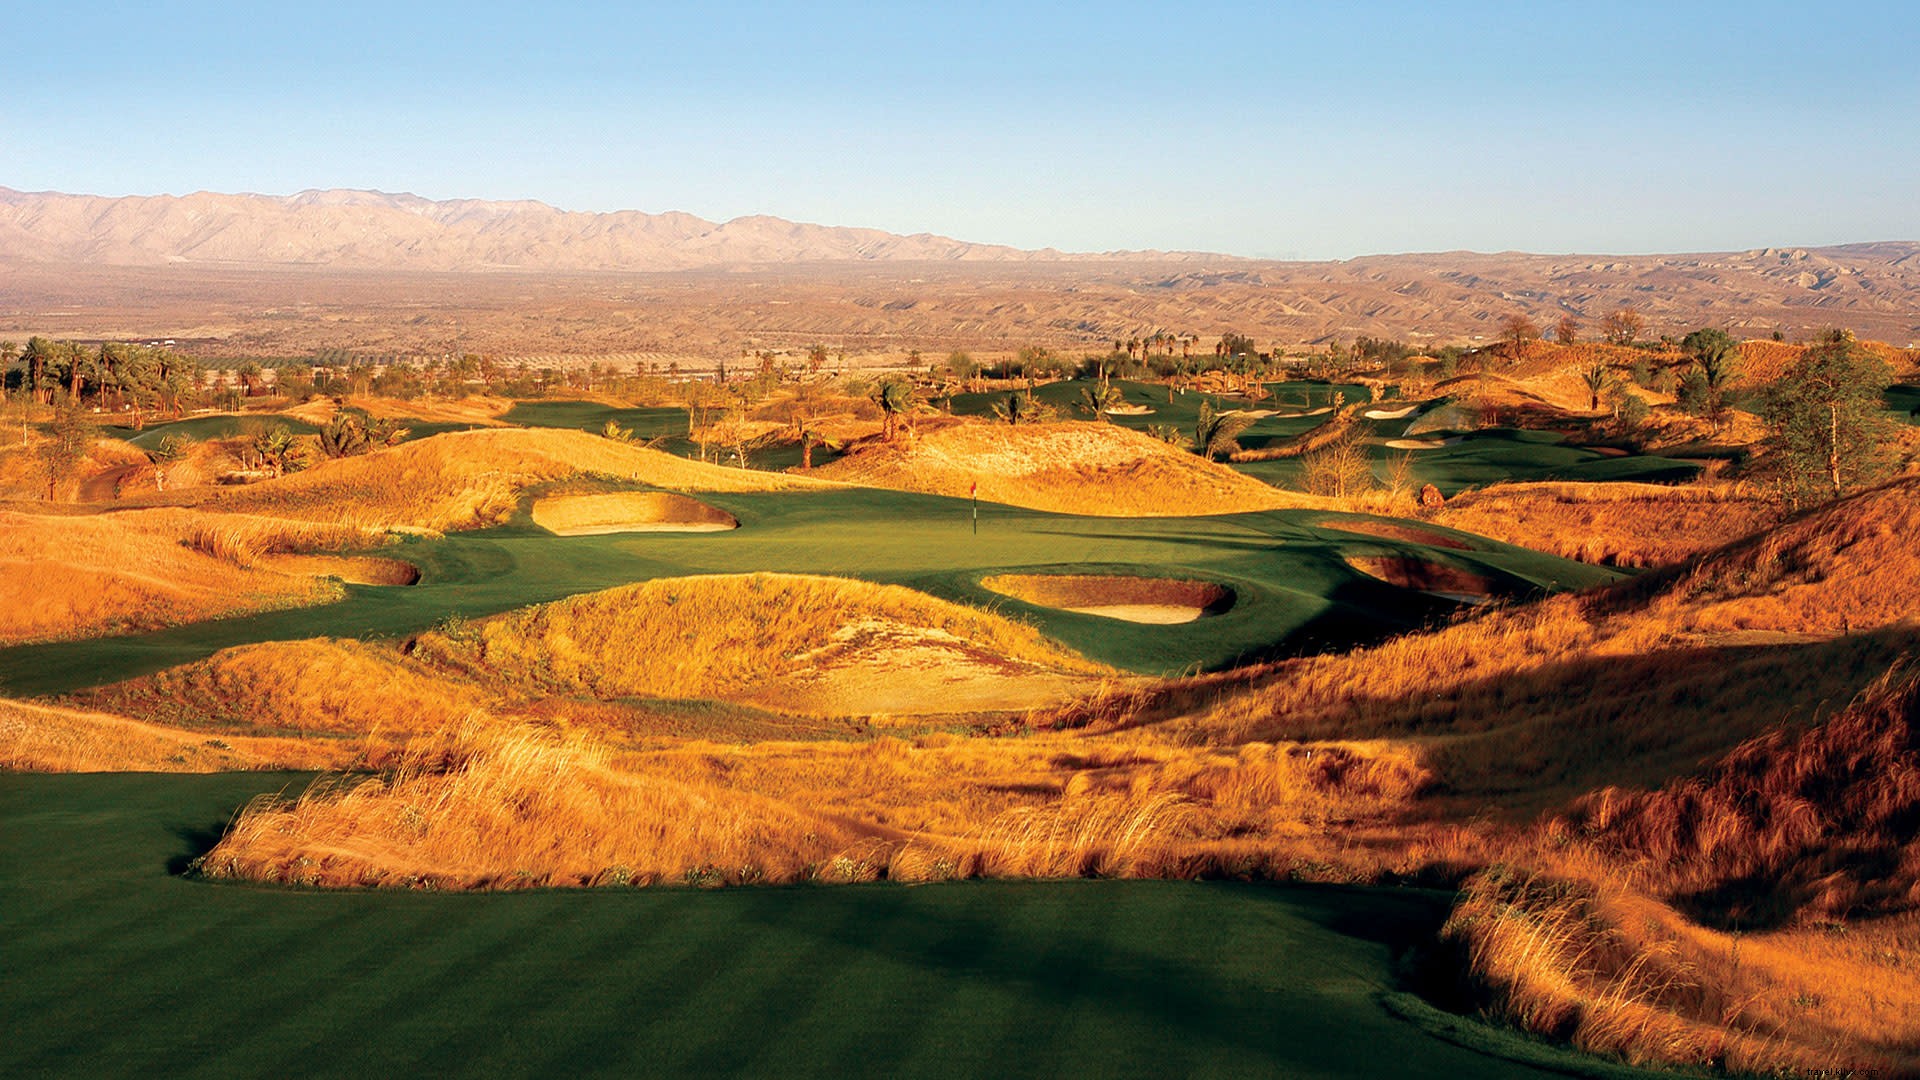 Menginap &Bermain Golf Terbaik di Greater Palm Springs 